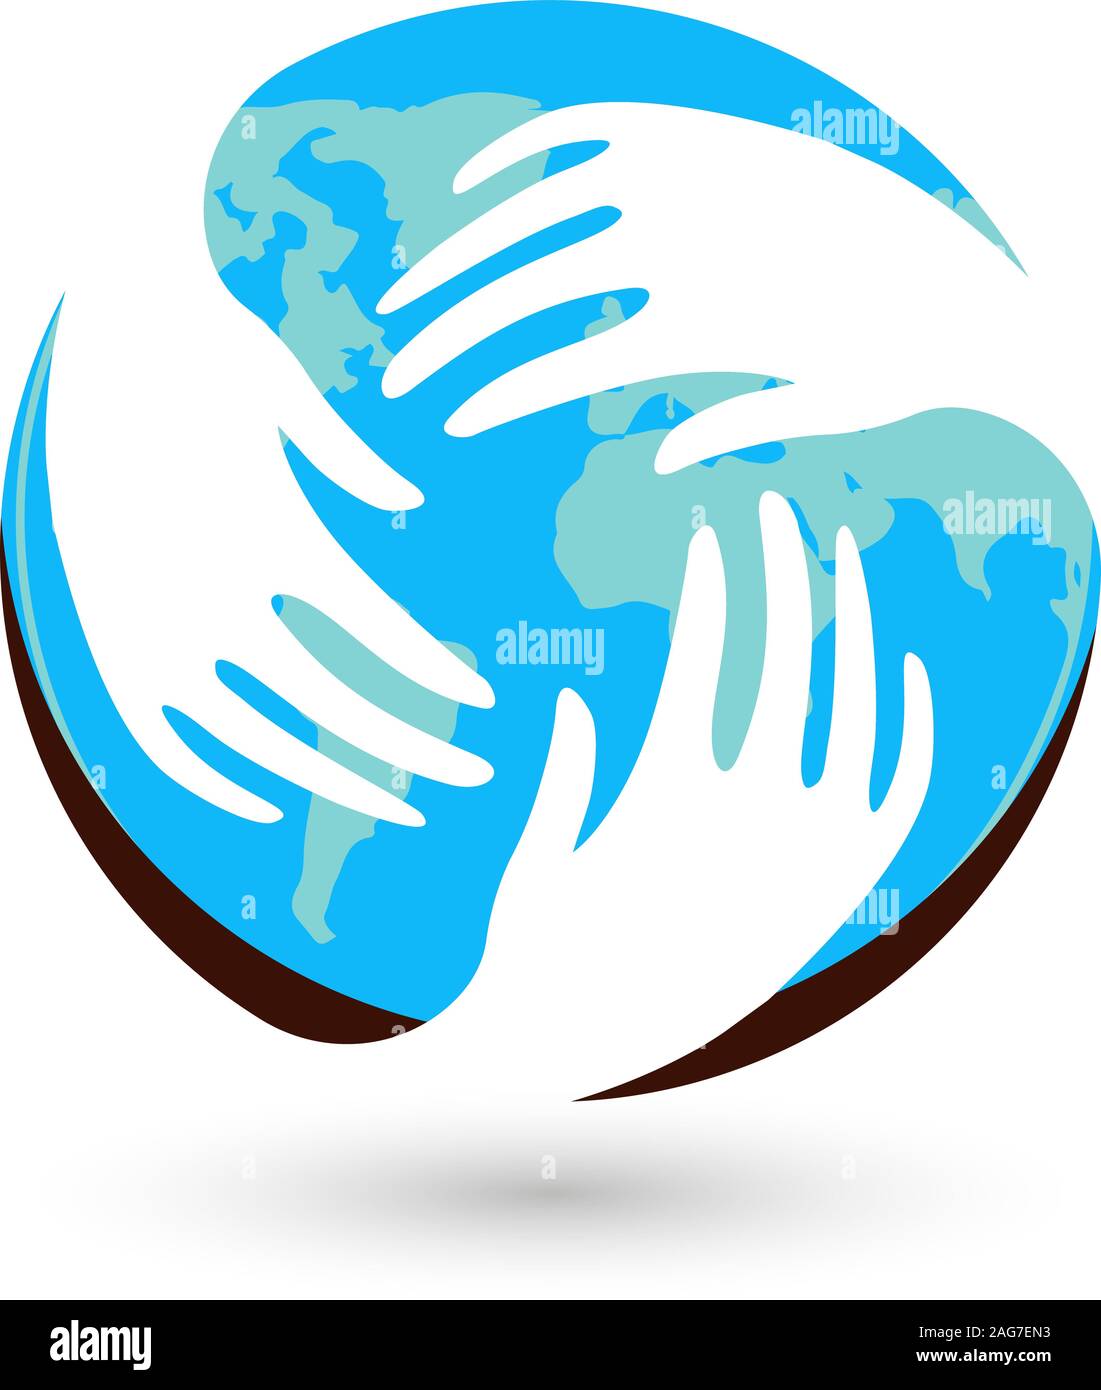 Isolierte Blauer runder Vektor Logo. Die globale Kommunikation. Hilfsbereite Menschen. Weiße Hände. Barmherzigkeit unterzeichnen. Flüchtlingslager Emblem. Rund um die Welt. Blue Earth Stock Vektor